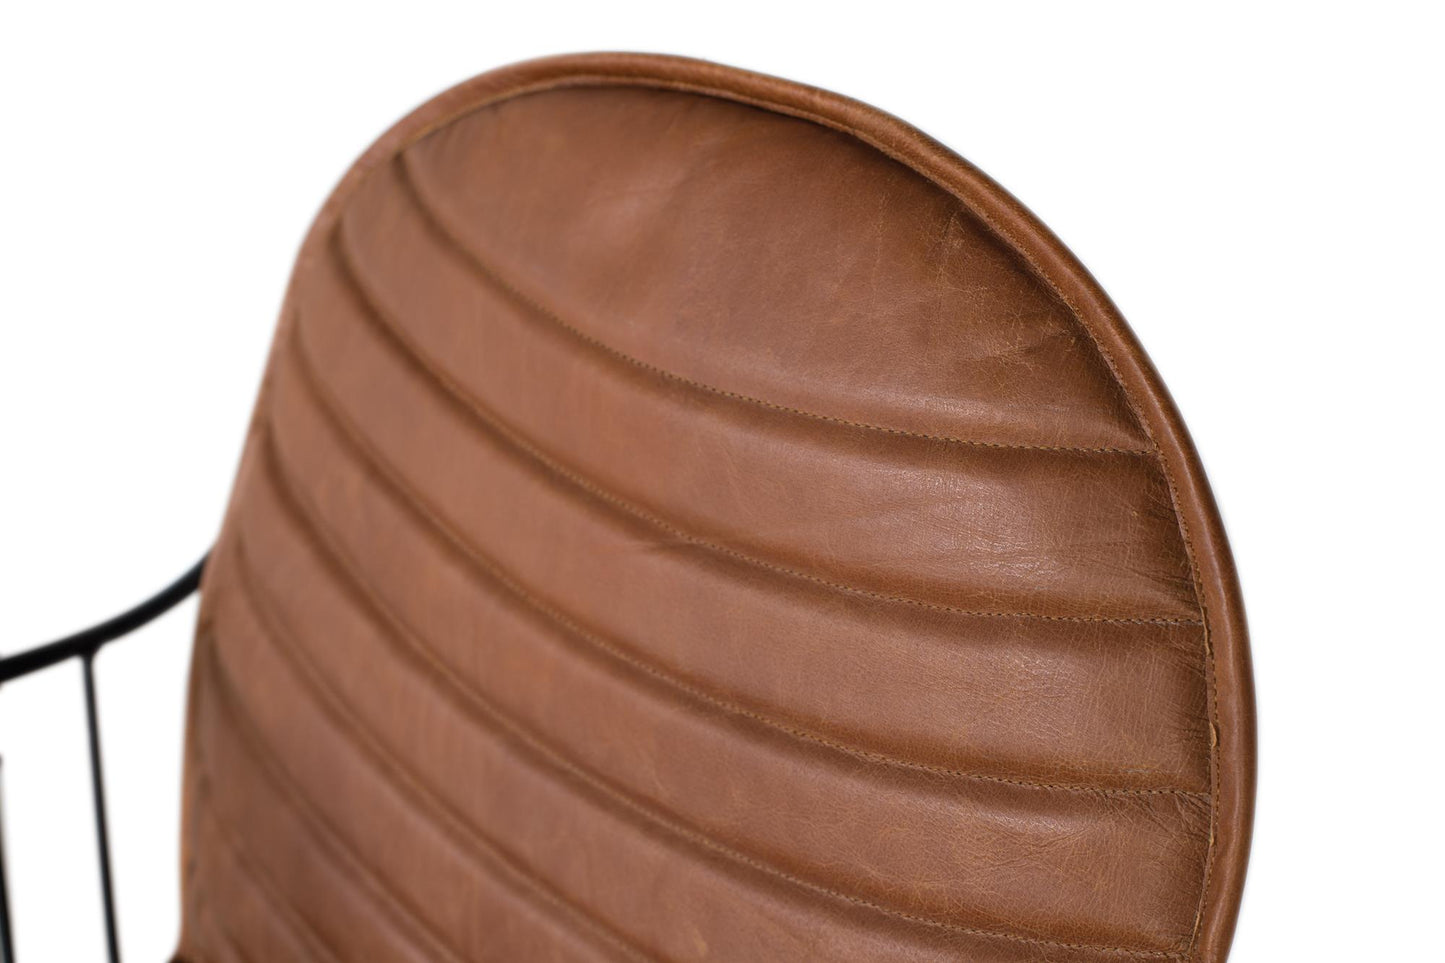 Silla tapizada en piel marrón claro, con estructura de metal y tacos antideslizantes que impiden desplazamientos y protegen el suelo contra ralladuras - GINER Y COLOMER